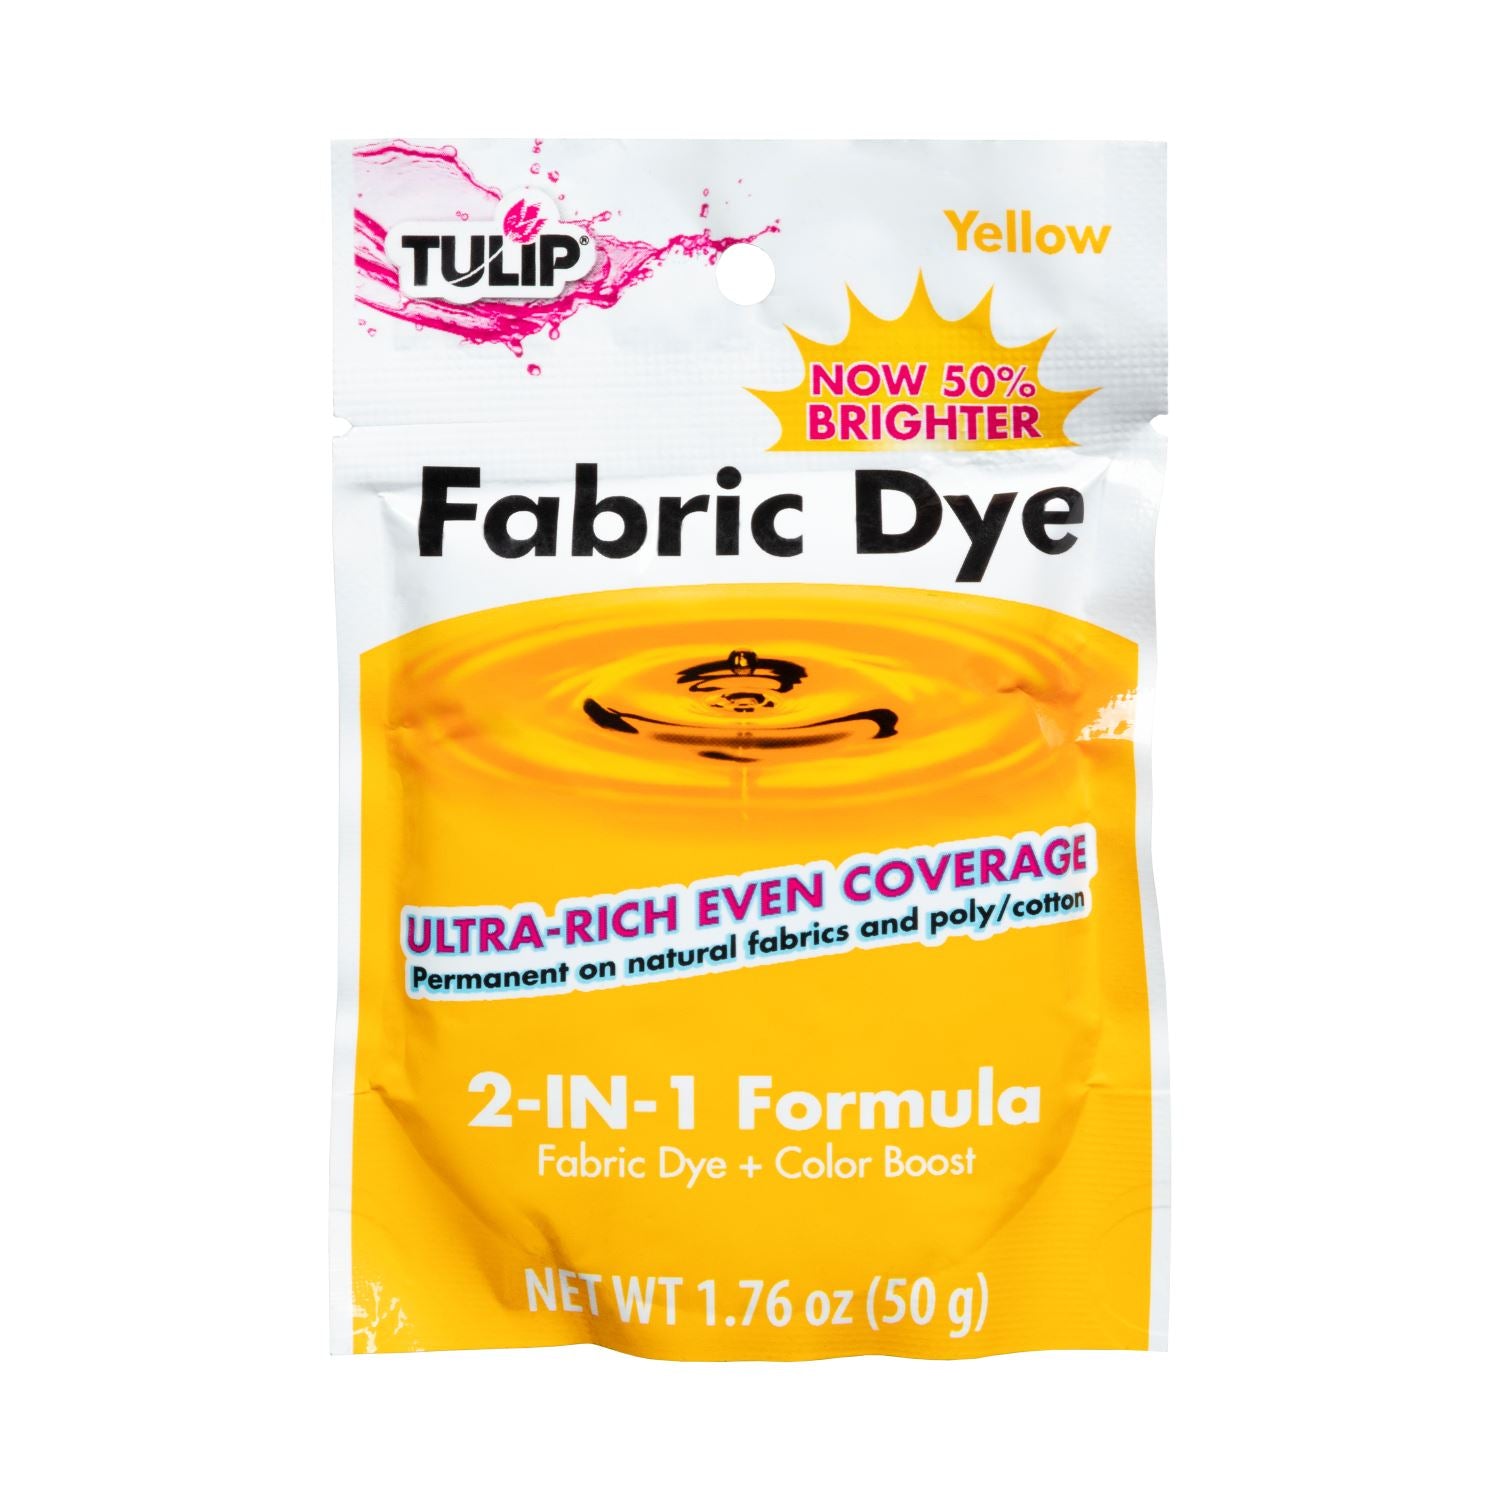 Tulip Fabric Dye 2-IN-1 Formula Yellow - 1